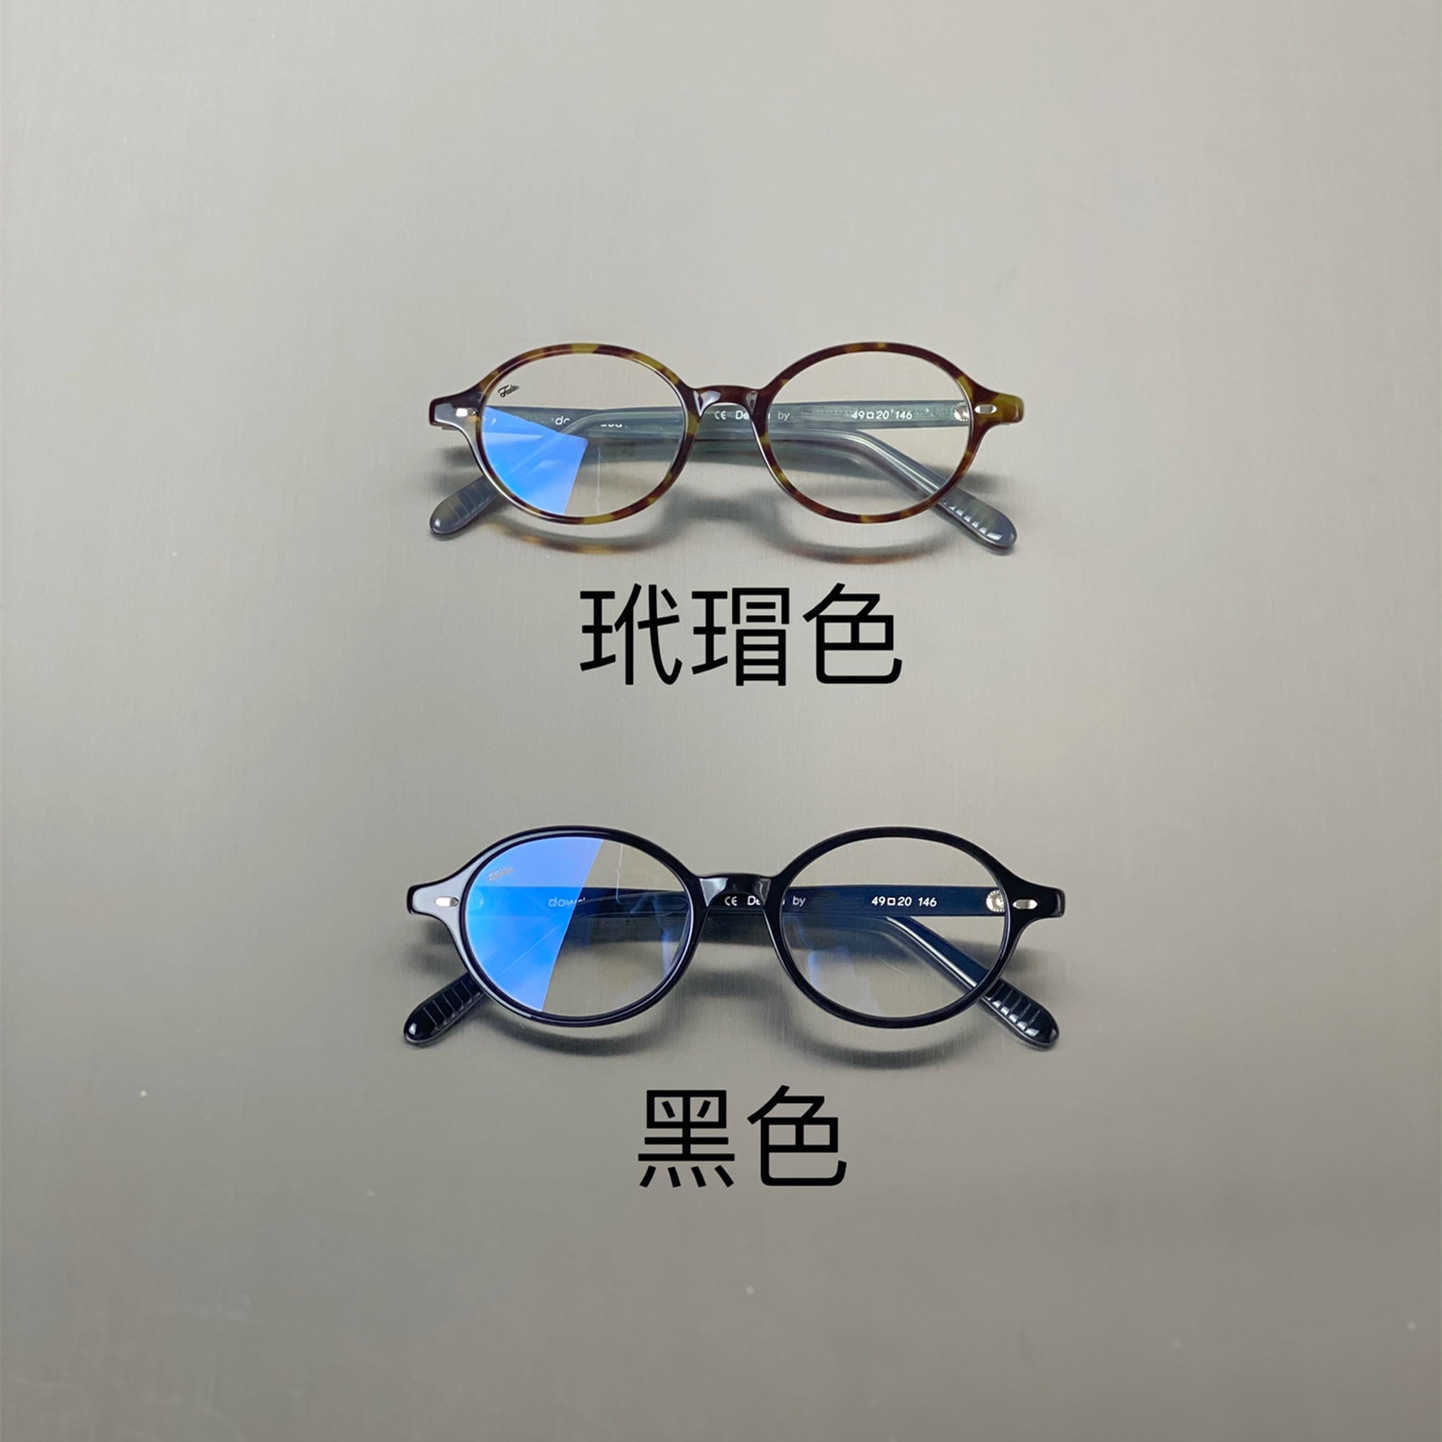 Nieuw Hawksbill -kleur Ovaal brillen frame frame slordig anti -blauw licht Ghostly Girl -gevoel kan worden gekoppeld met verschillende graden